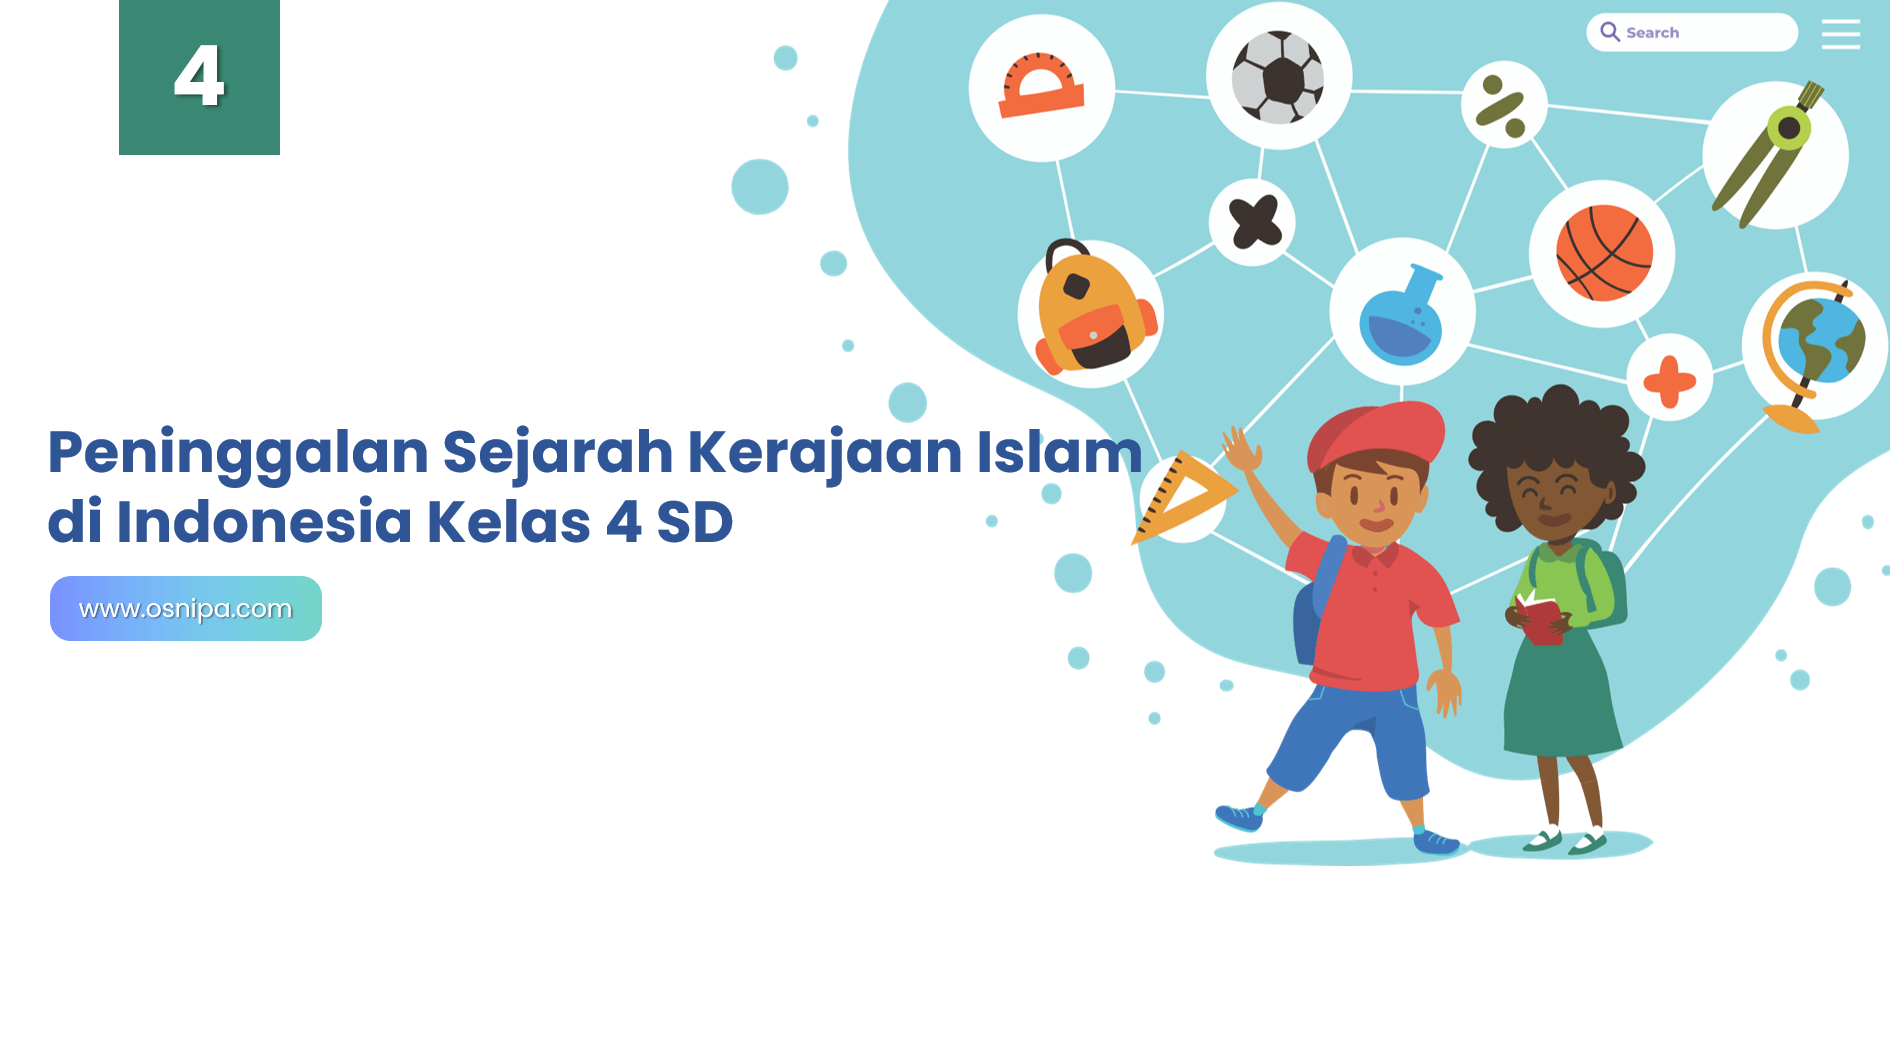 Kerajaan islam tertua di indonesia berdasarkan peninggalan-peninggalanya adalah ….